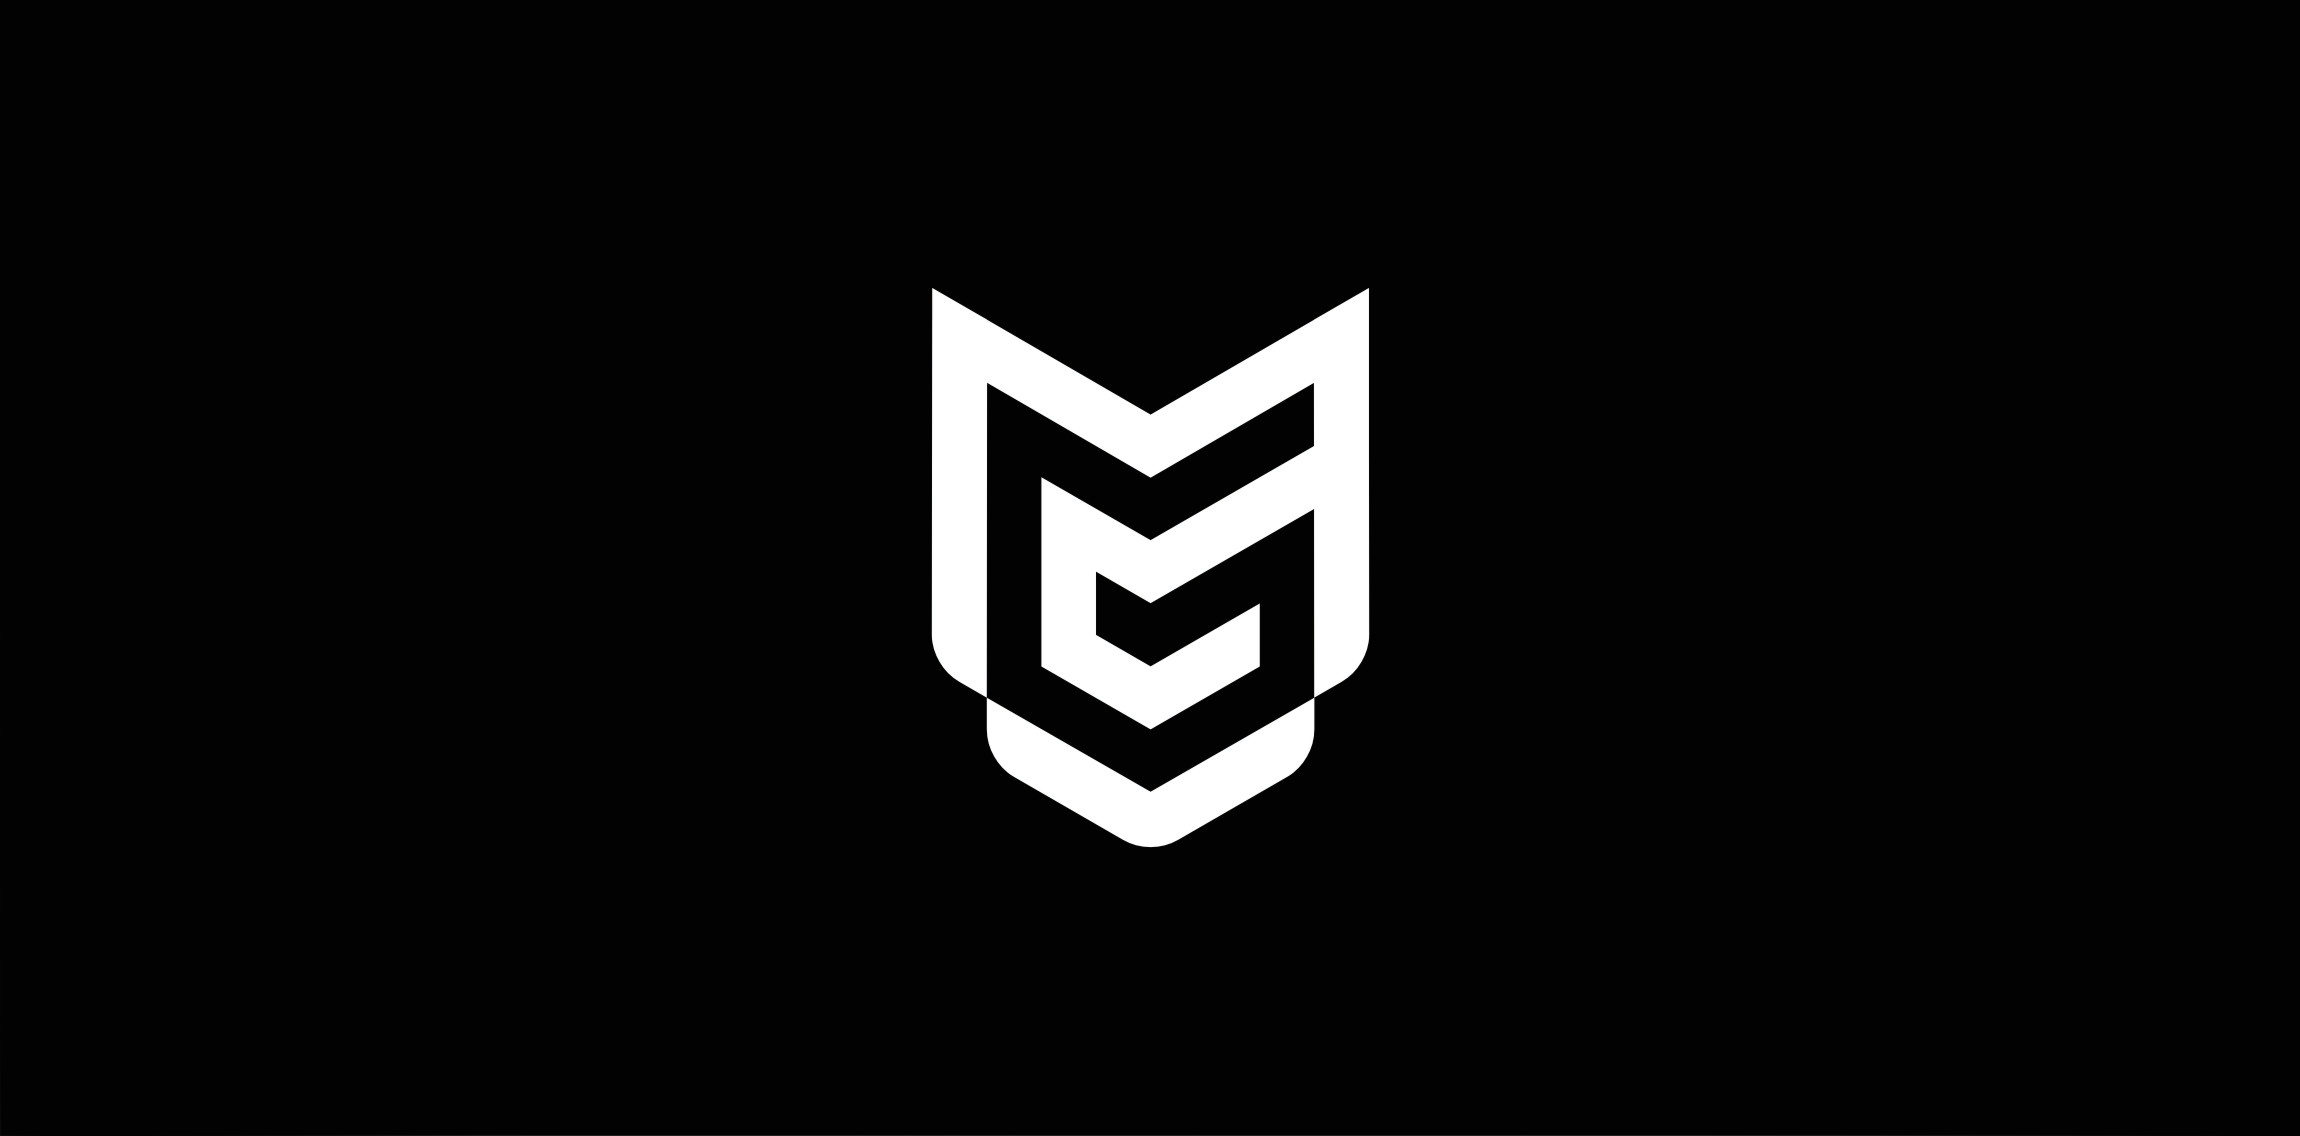 MG Monogram logo • LogoMoose - Logo Inspiration